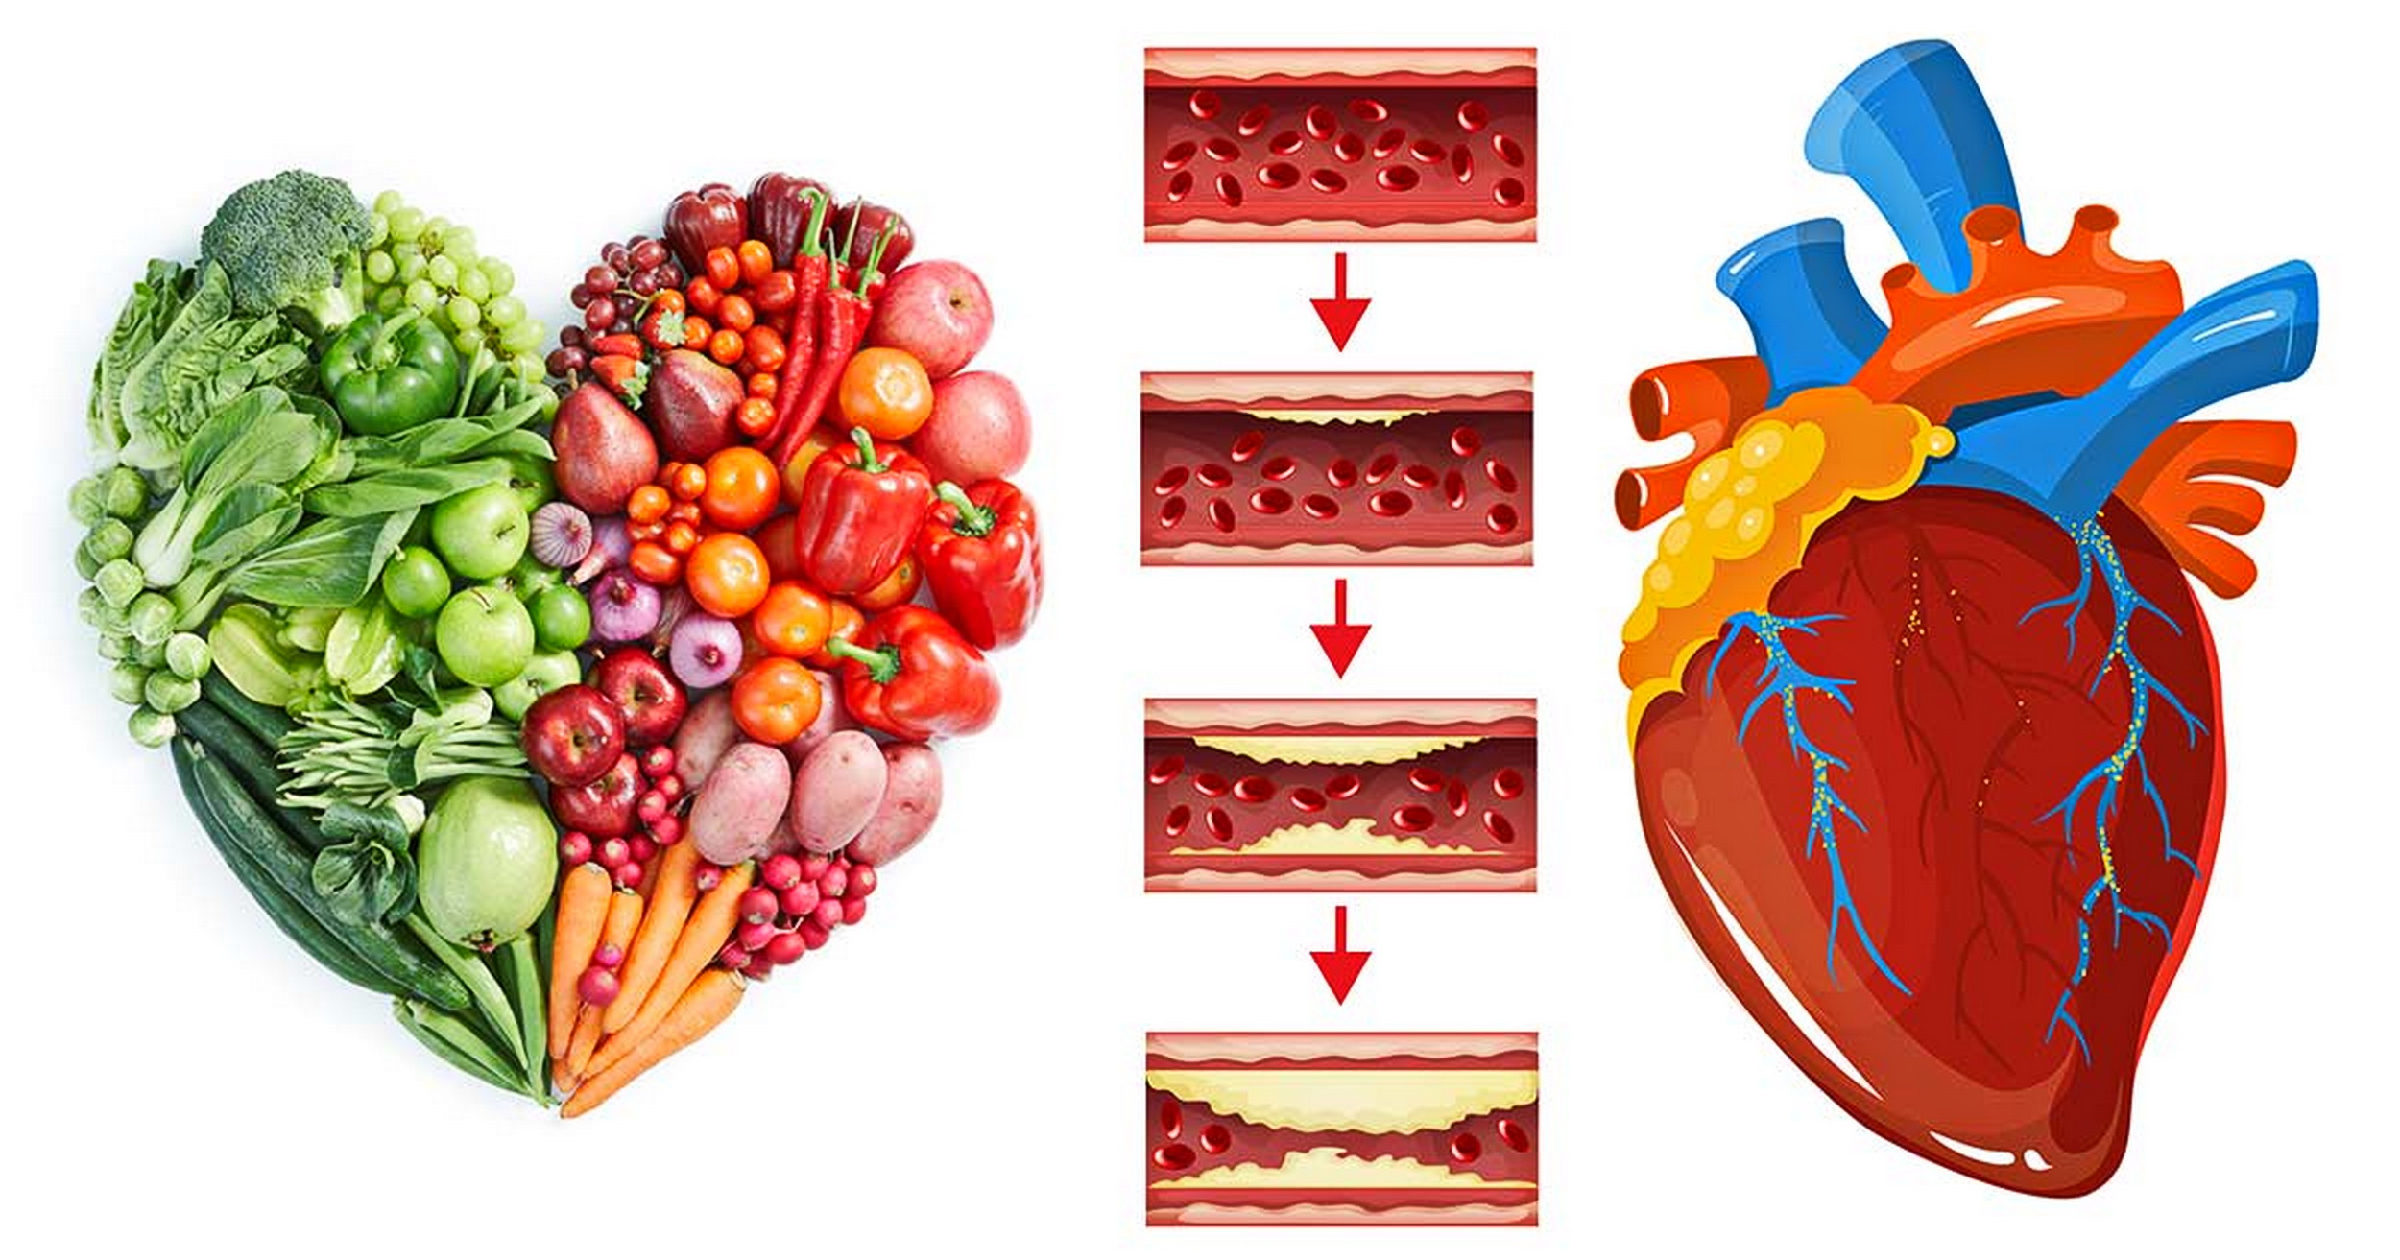 Сердечно сосудистые заболевания атеросклероз. Диетотерапия при сердечно-сосудистой патологии. Питание для здорового сердца. Профилактика атеросклероза сосудов сердца. Атеросклероз диетотерапия.